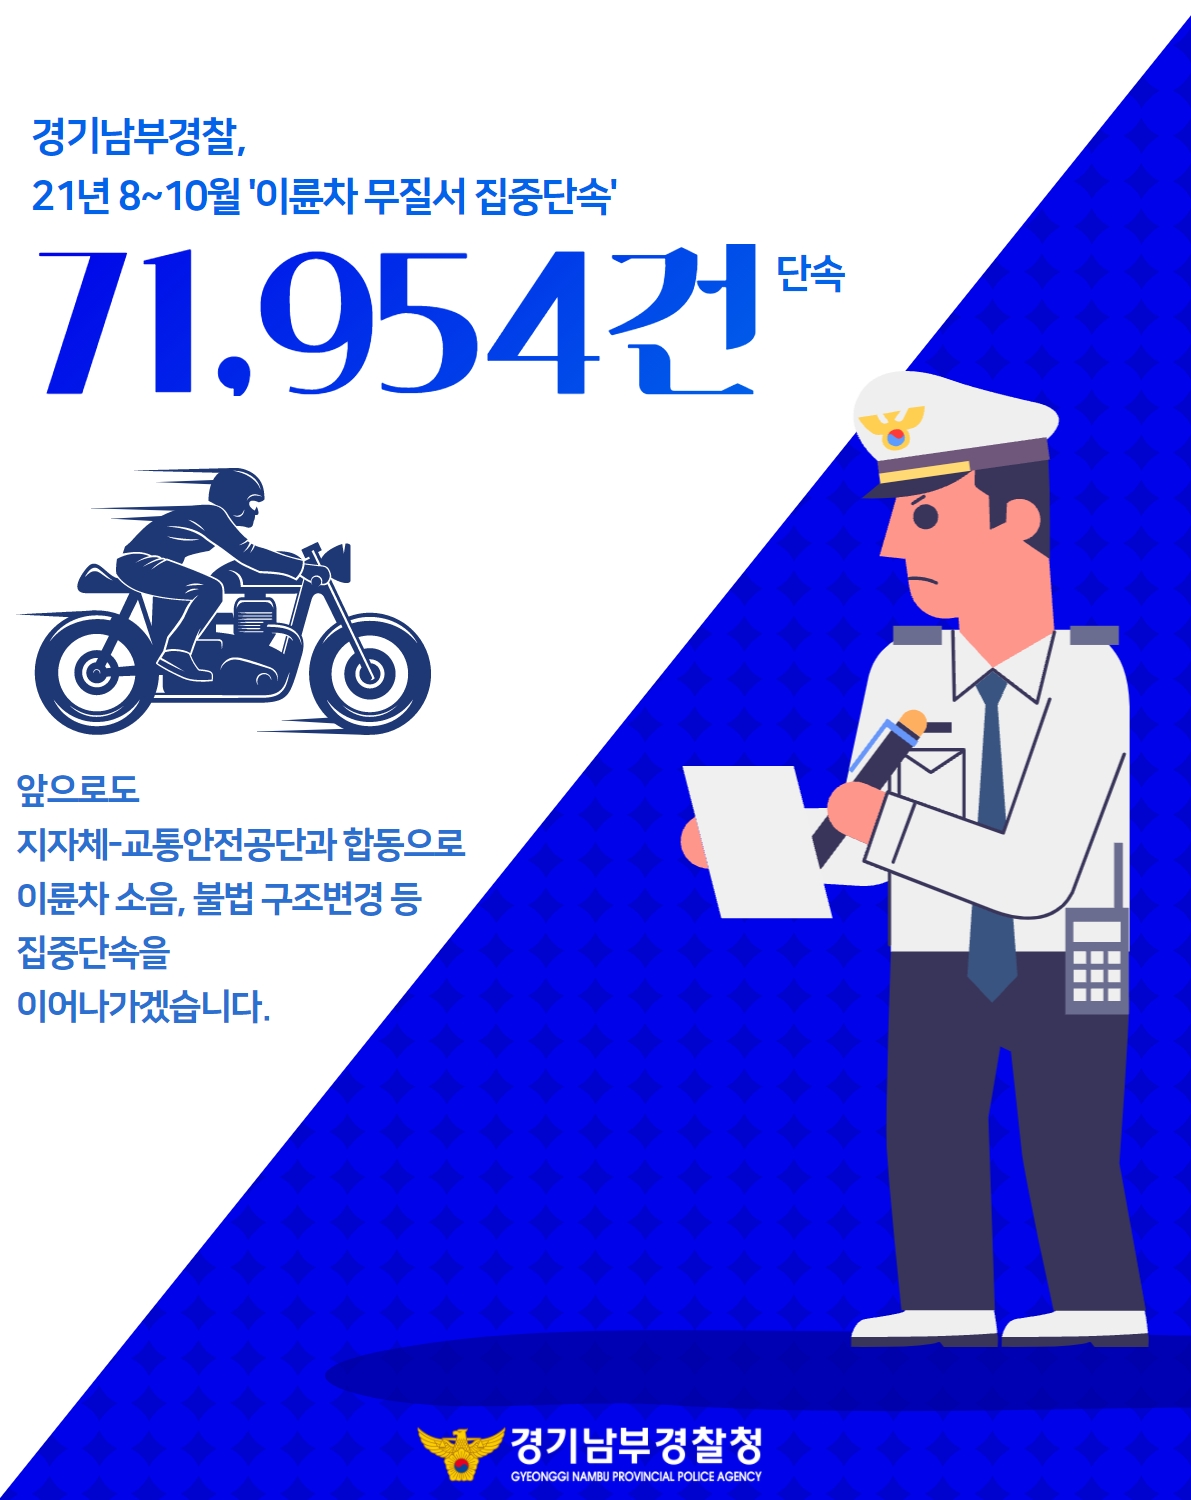 경기남부경찰, 이륜차 무질서 집중단속 71,954건('21.8~10월)